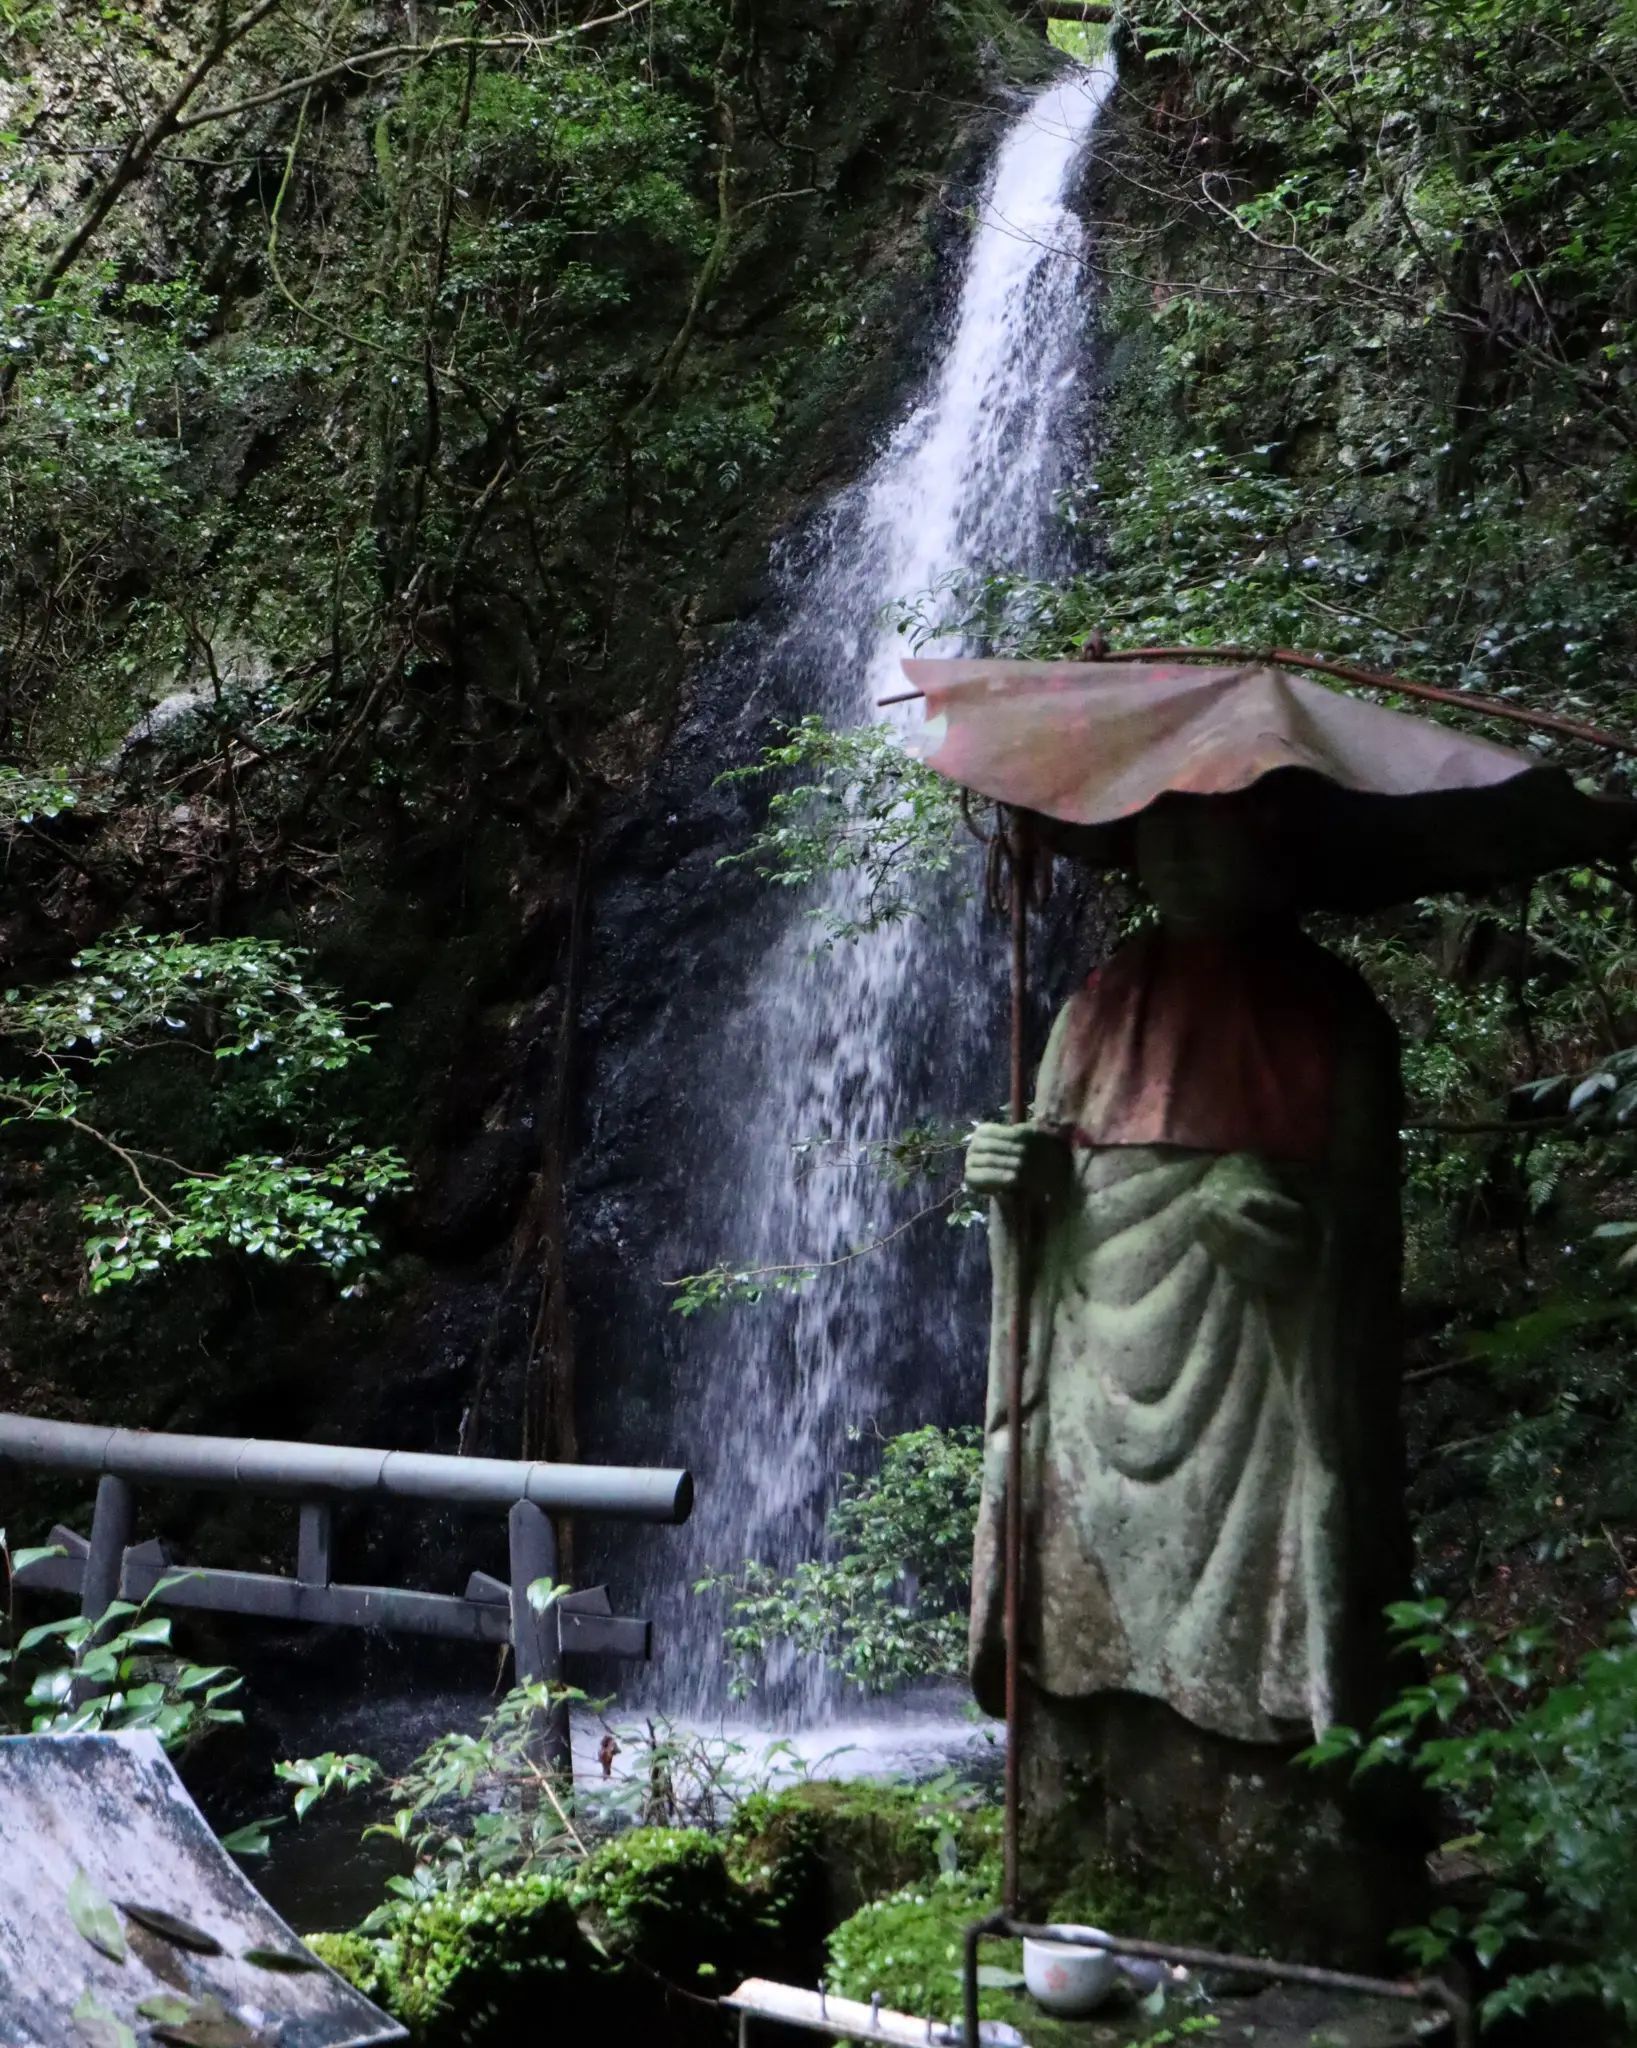 【岐阜県】岩門の滝 (モネの池から車で10分程度)モネの池のついでにオススメ(笑)の画像 (2枚目)